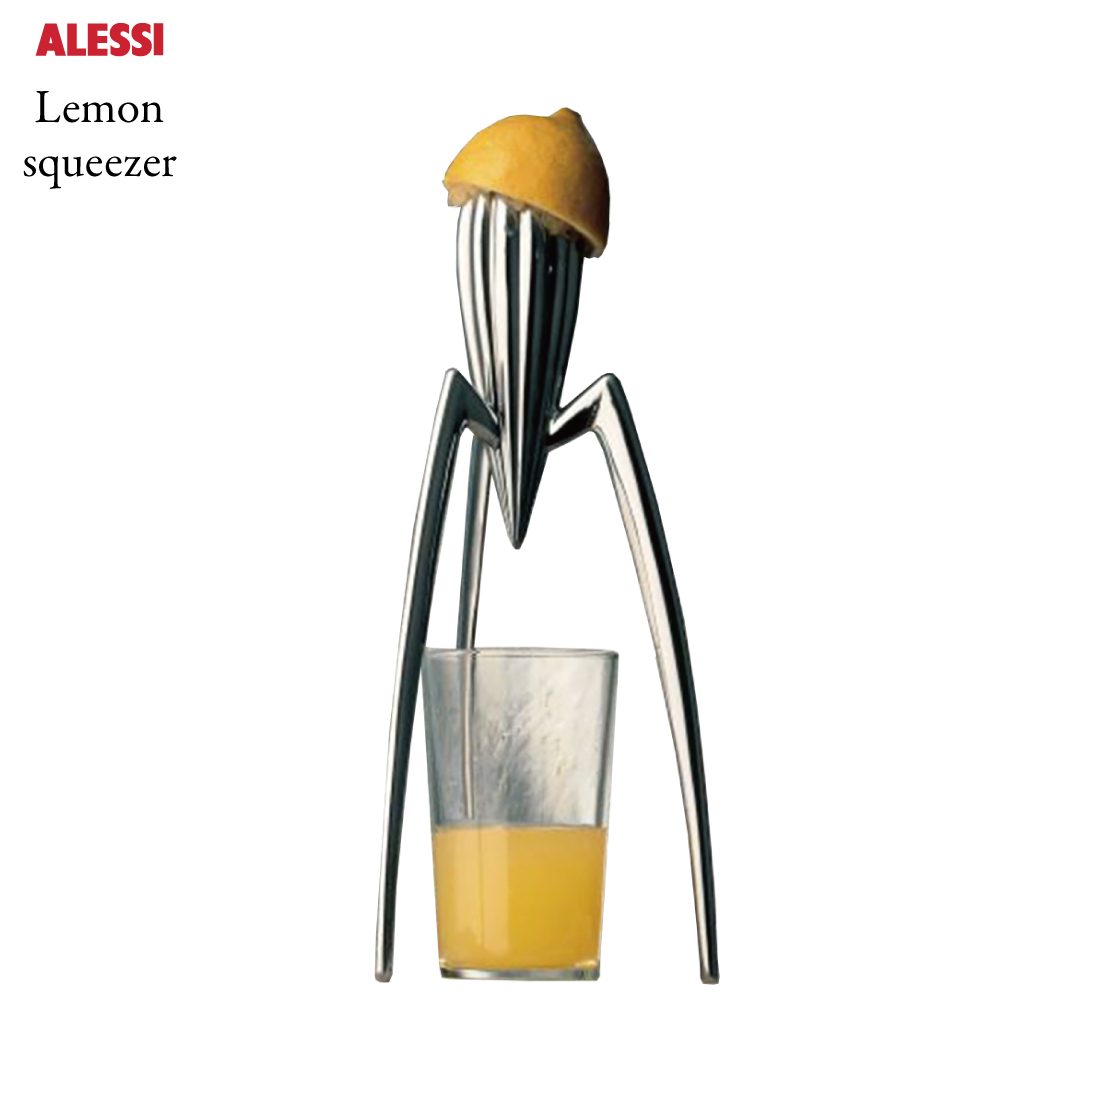 イタリアを代表するデザイン 引出物 プロダクト 超定番 カンパニーのAlessi Alessi アレッシィ Lemon squeezer フィリップ スタルク レモン Philippe スクイーザー Starck